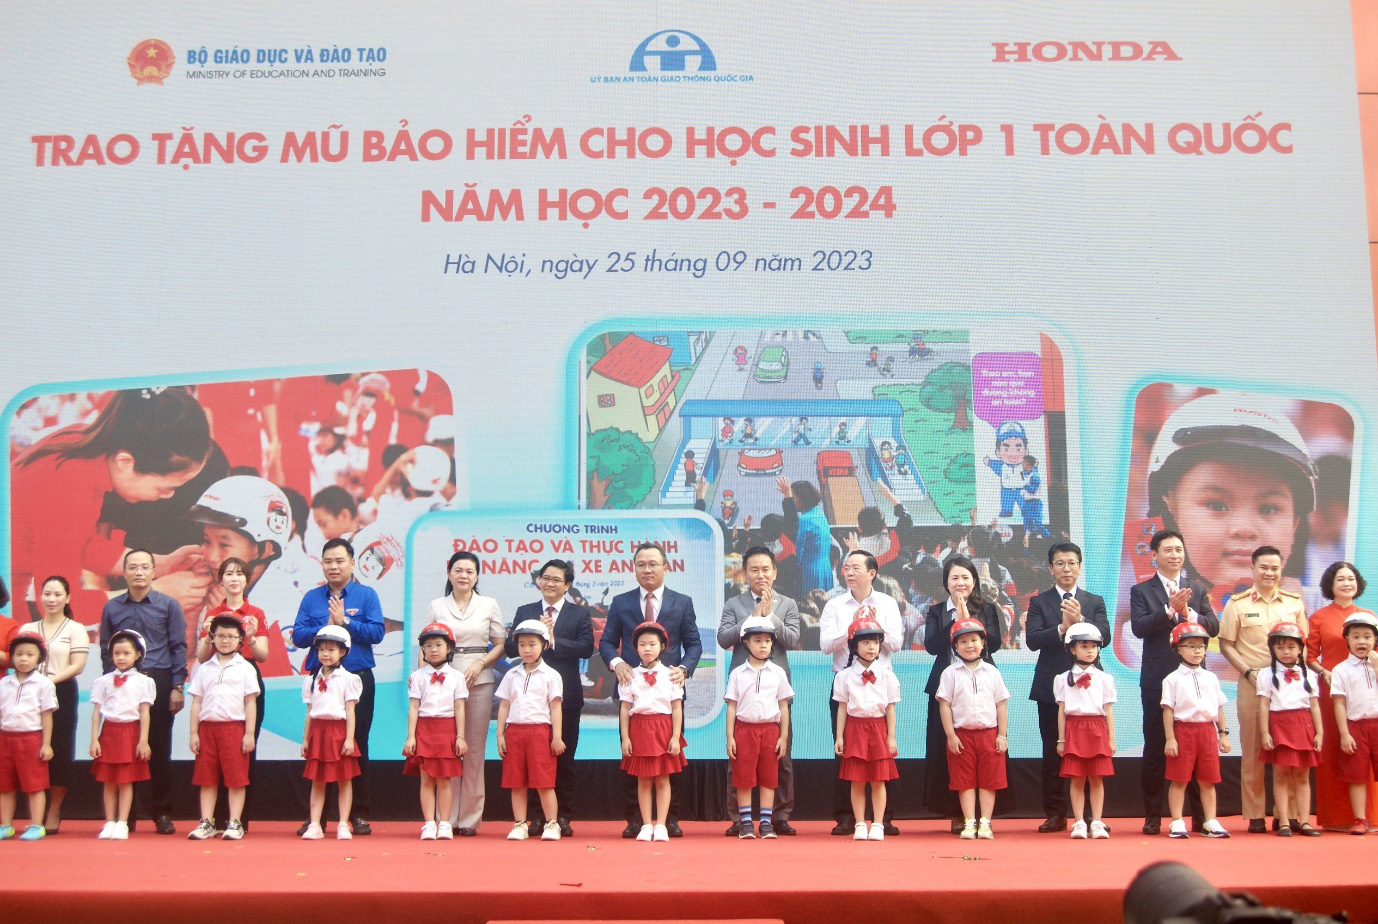 Các đại biểu trao tặng mũ bảo hiểm cho các em học sinh lớp 1 Trường tiểu học Phú Đô